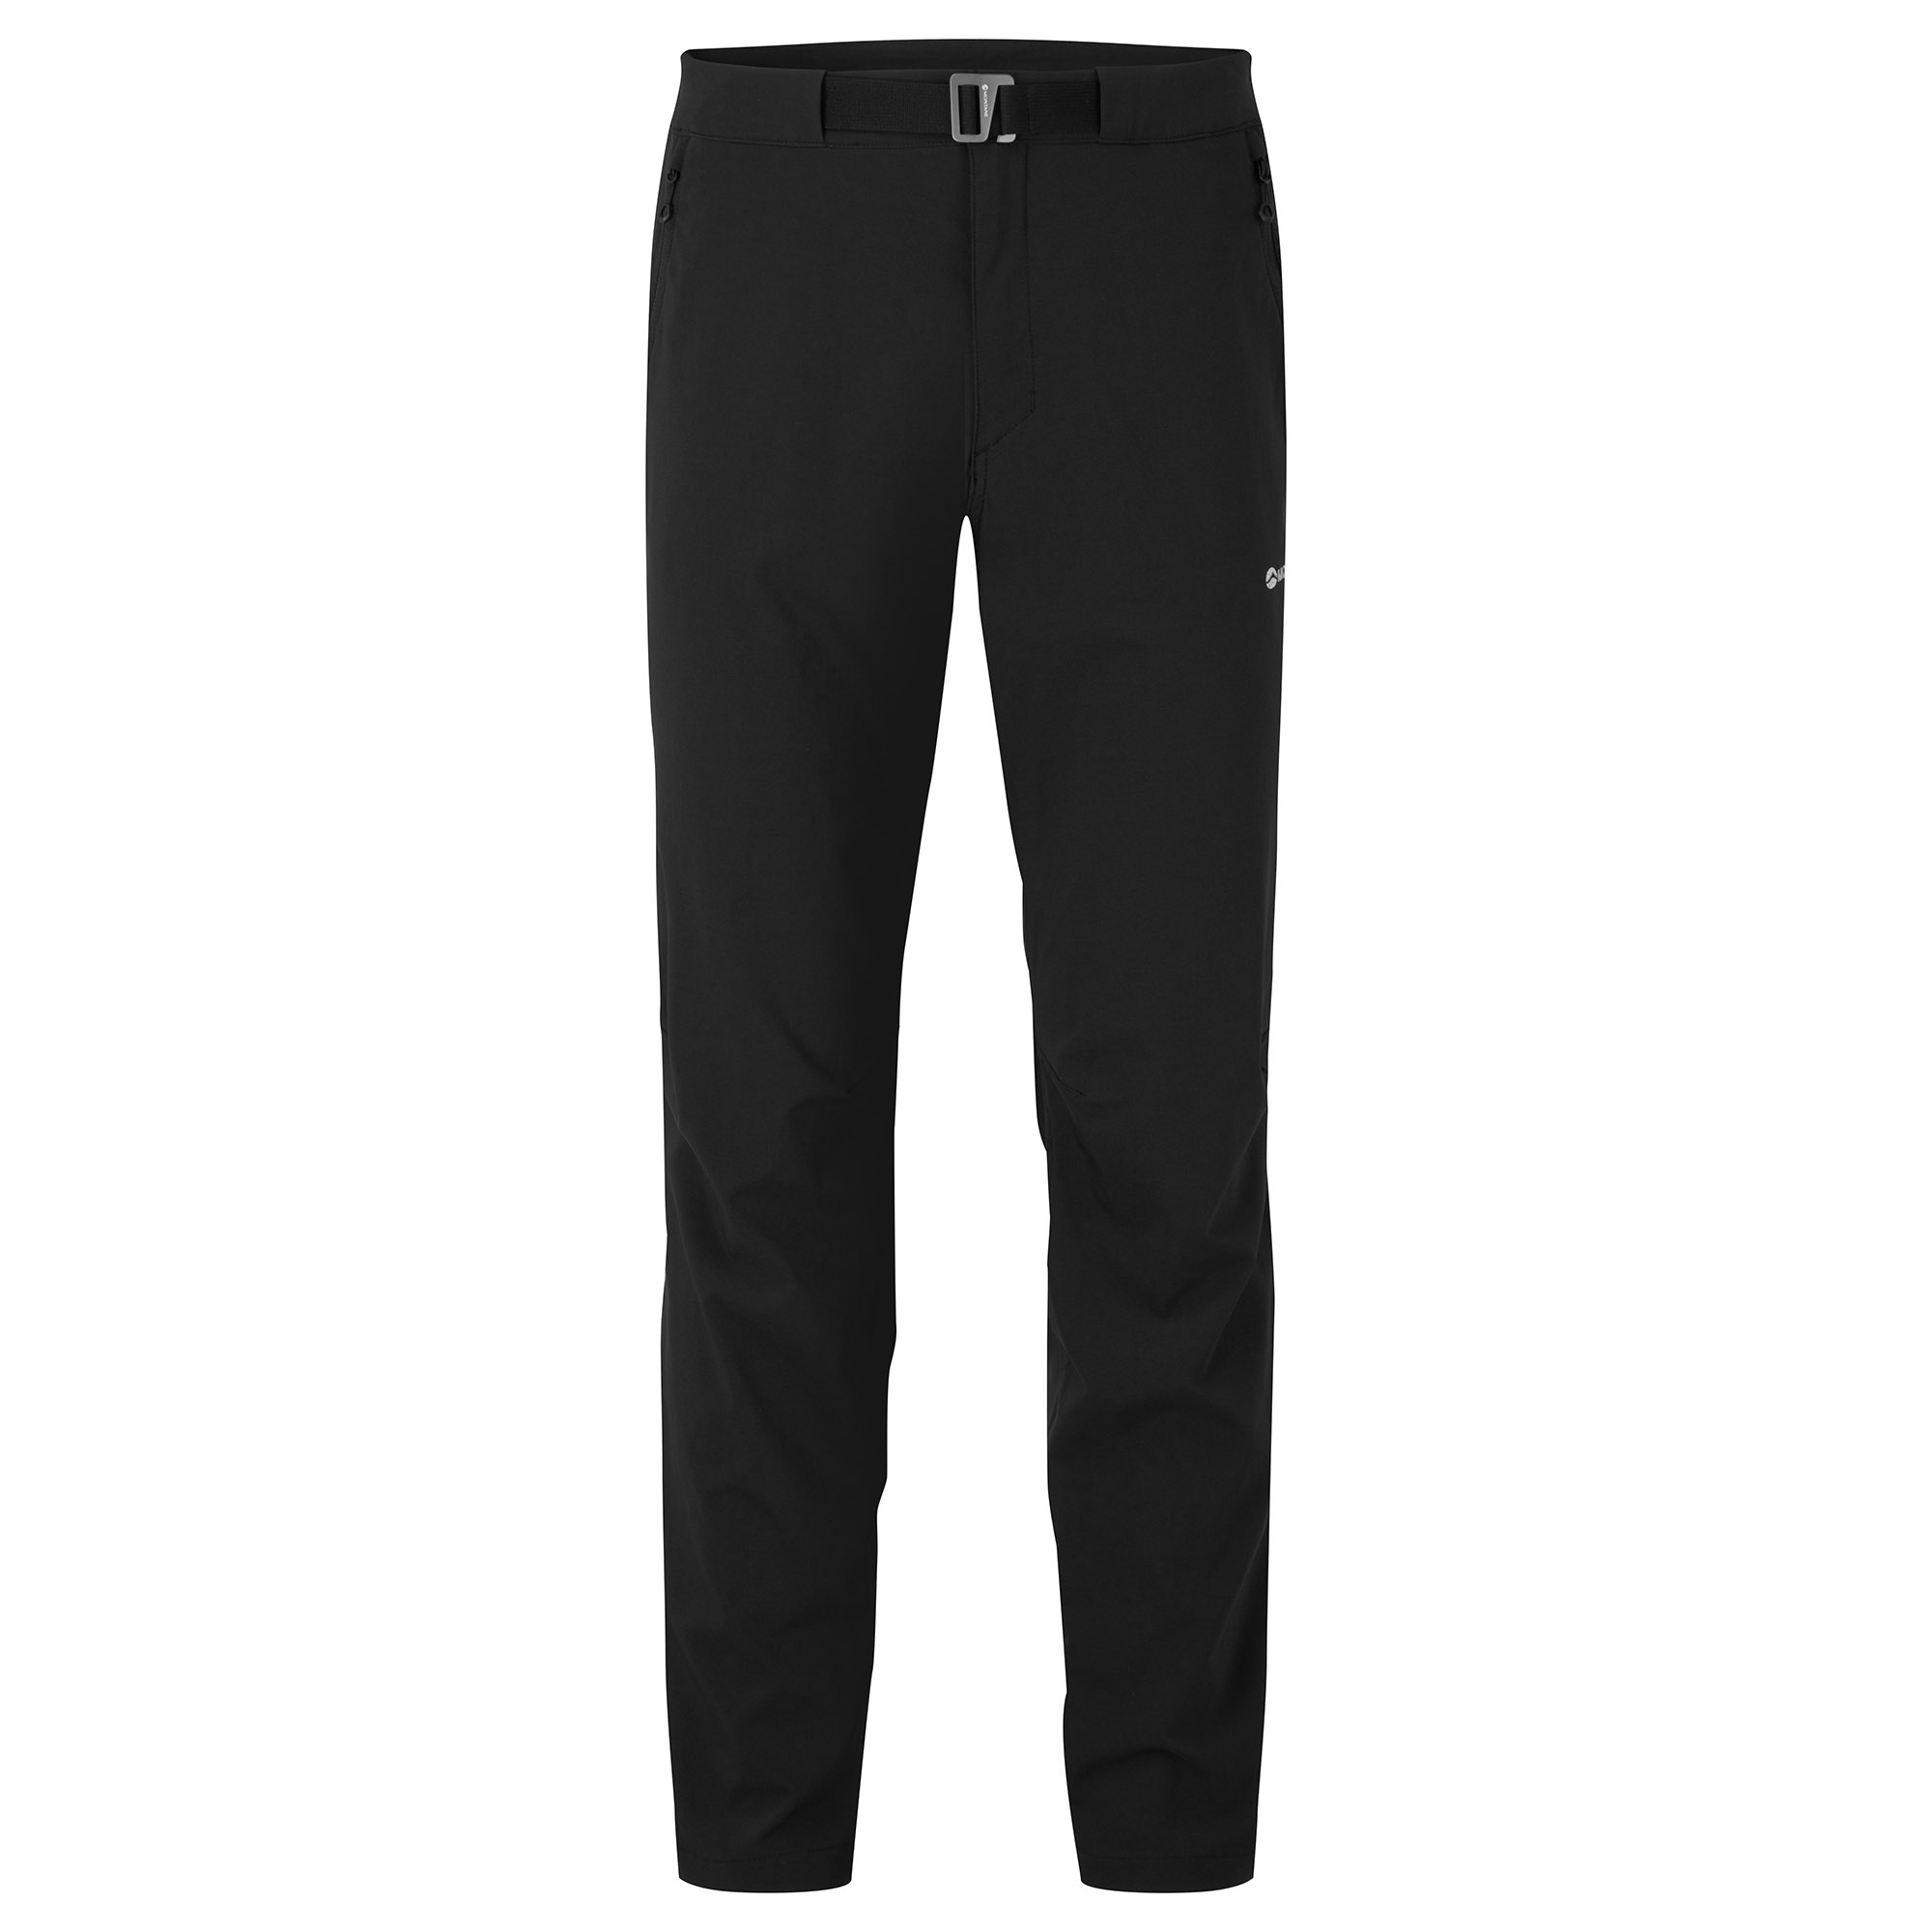 Montane pánské softshellové kalhoty Tenacity Lite Pants - Prodloužené Nohavice Barva: black, Velikost: 30